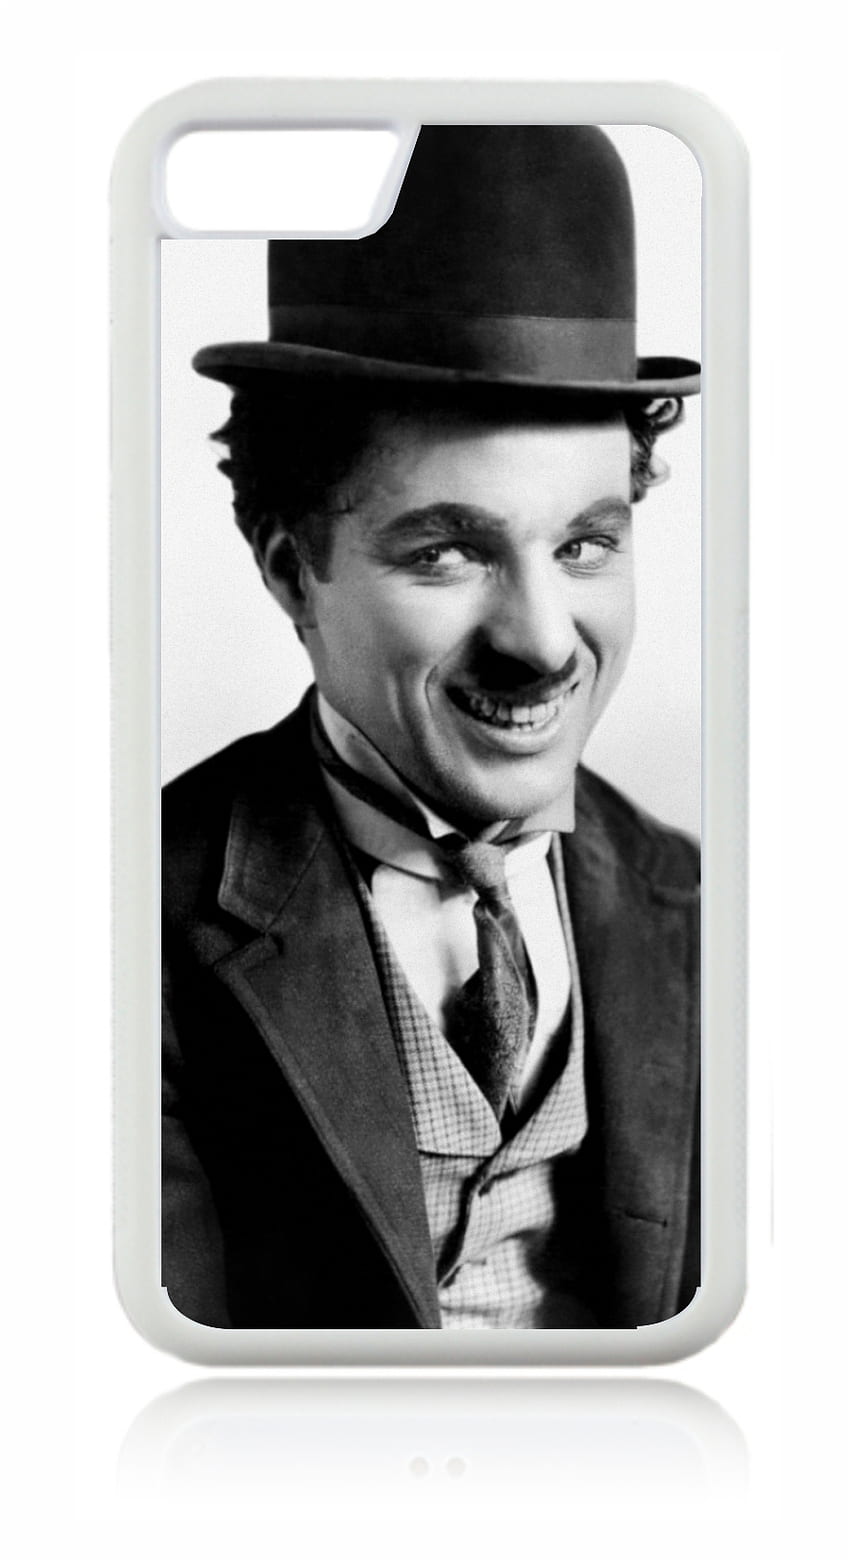 찰리 채플린 빈티지 연예인 배우 Apple iPhone 6 / iPhone 6s용 화이트 고무 케이스 - iPhone 6 액세서리 - iPhone 6s 액세서리, Charlie Chaplin iPhone 6s HD 전화 배경 화면